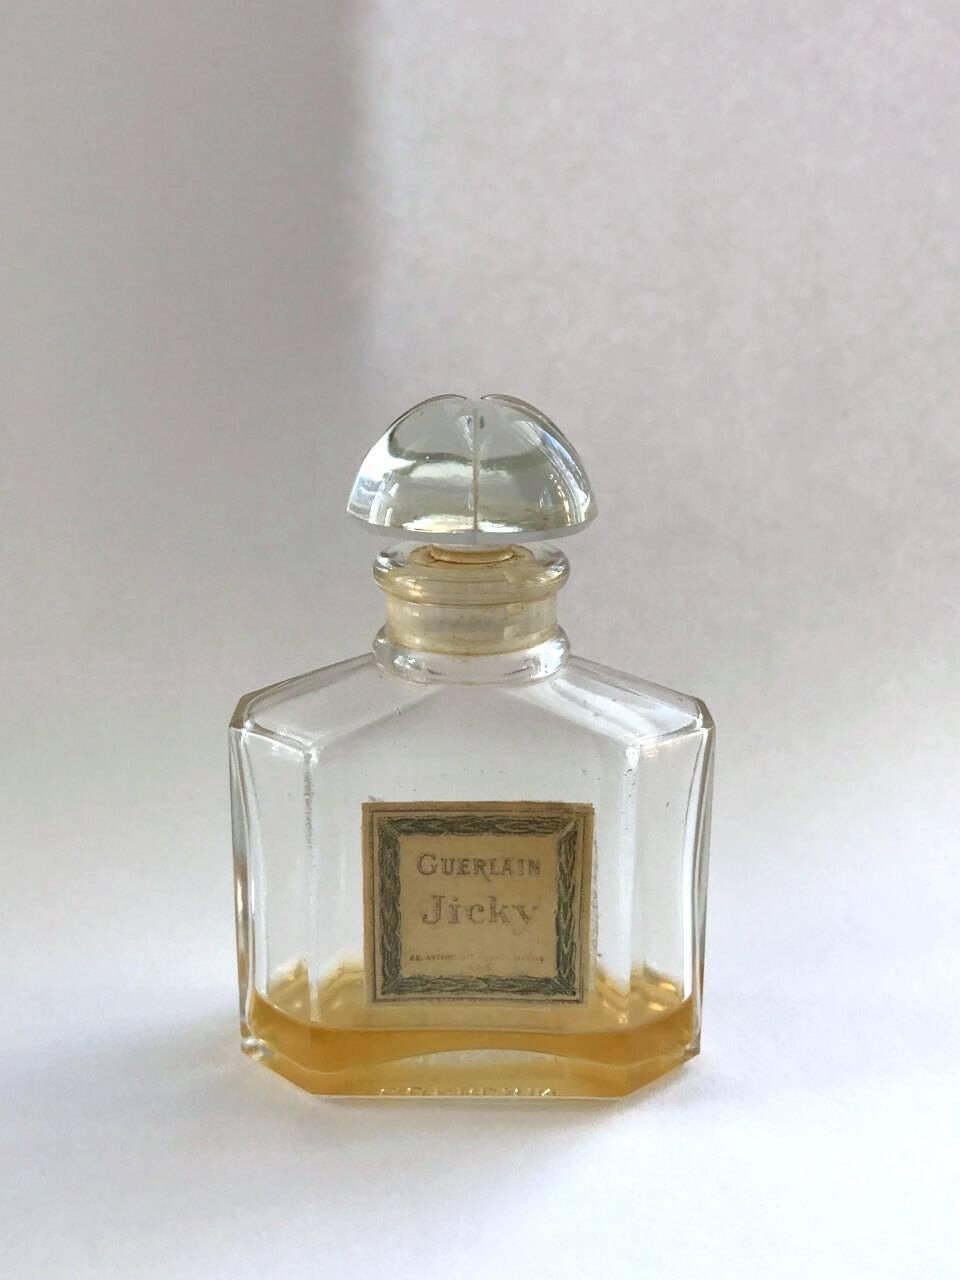 jicky fragrance